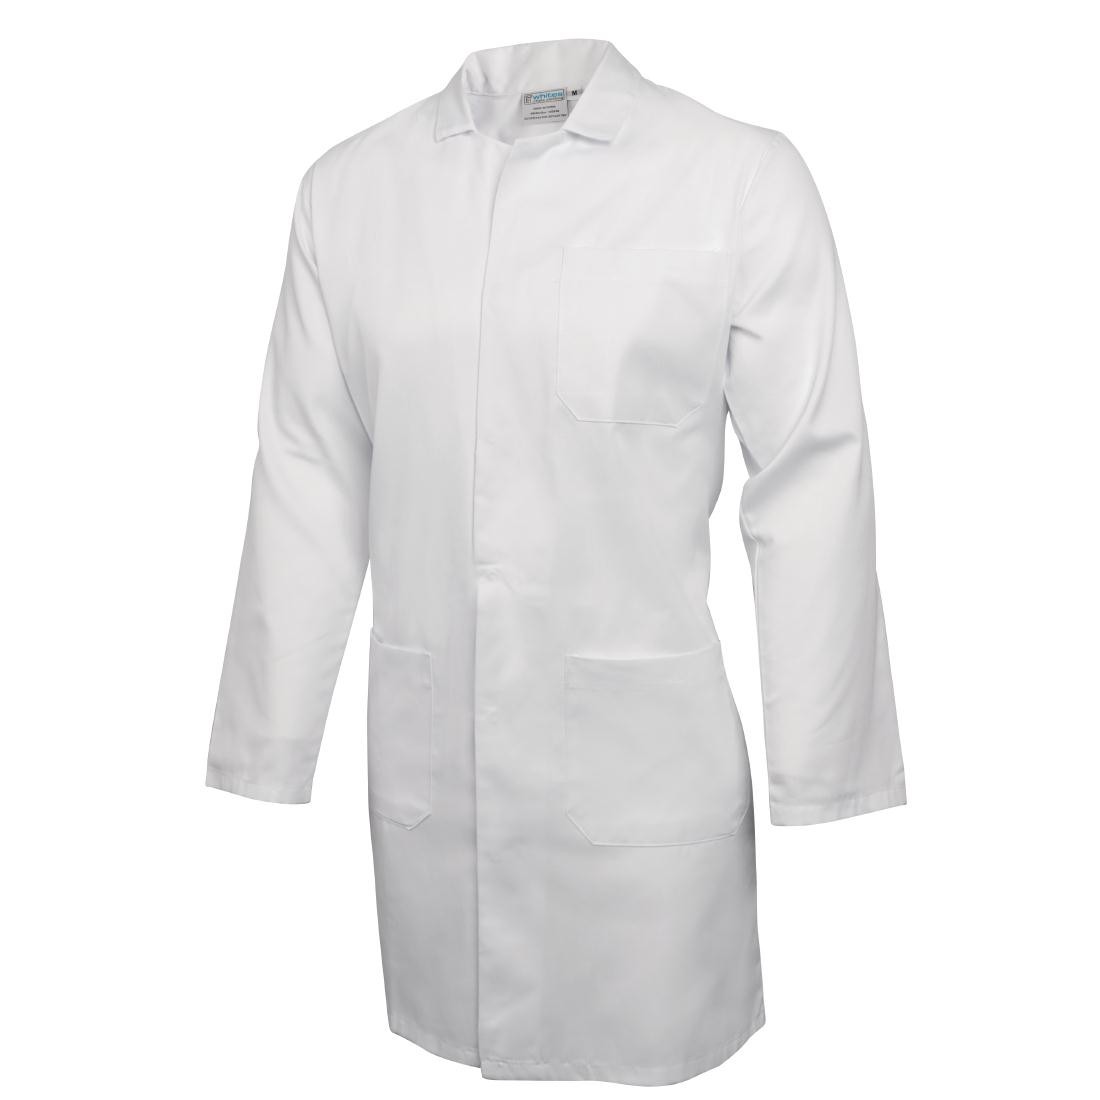 Whites Unisex Lab Coat White 